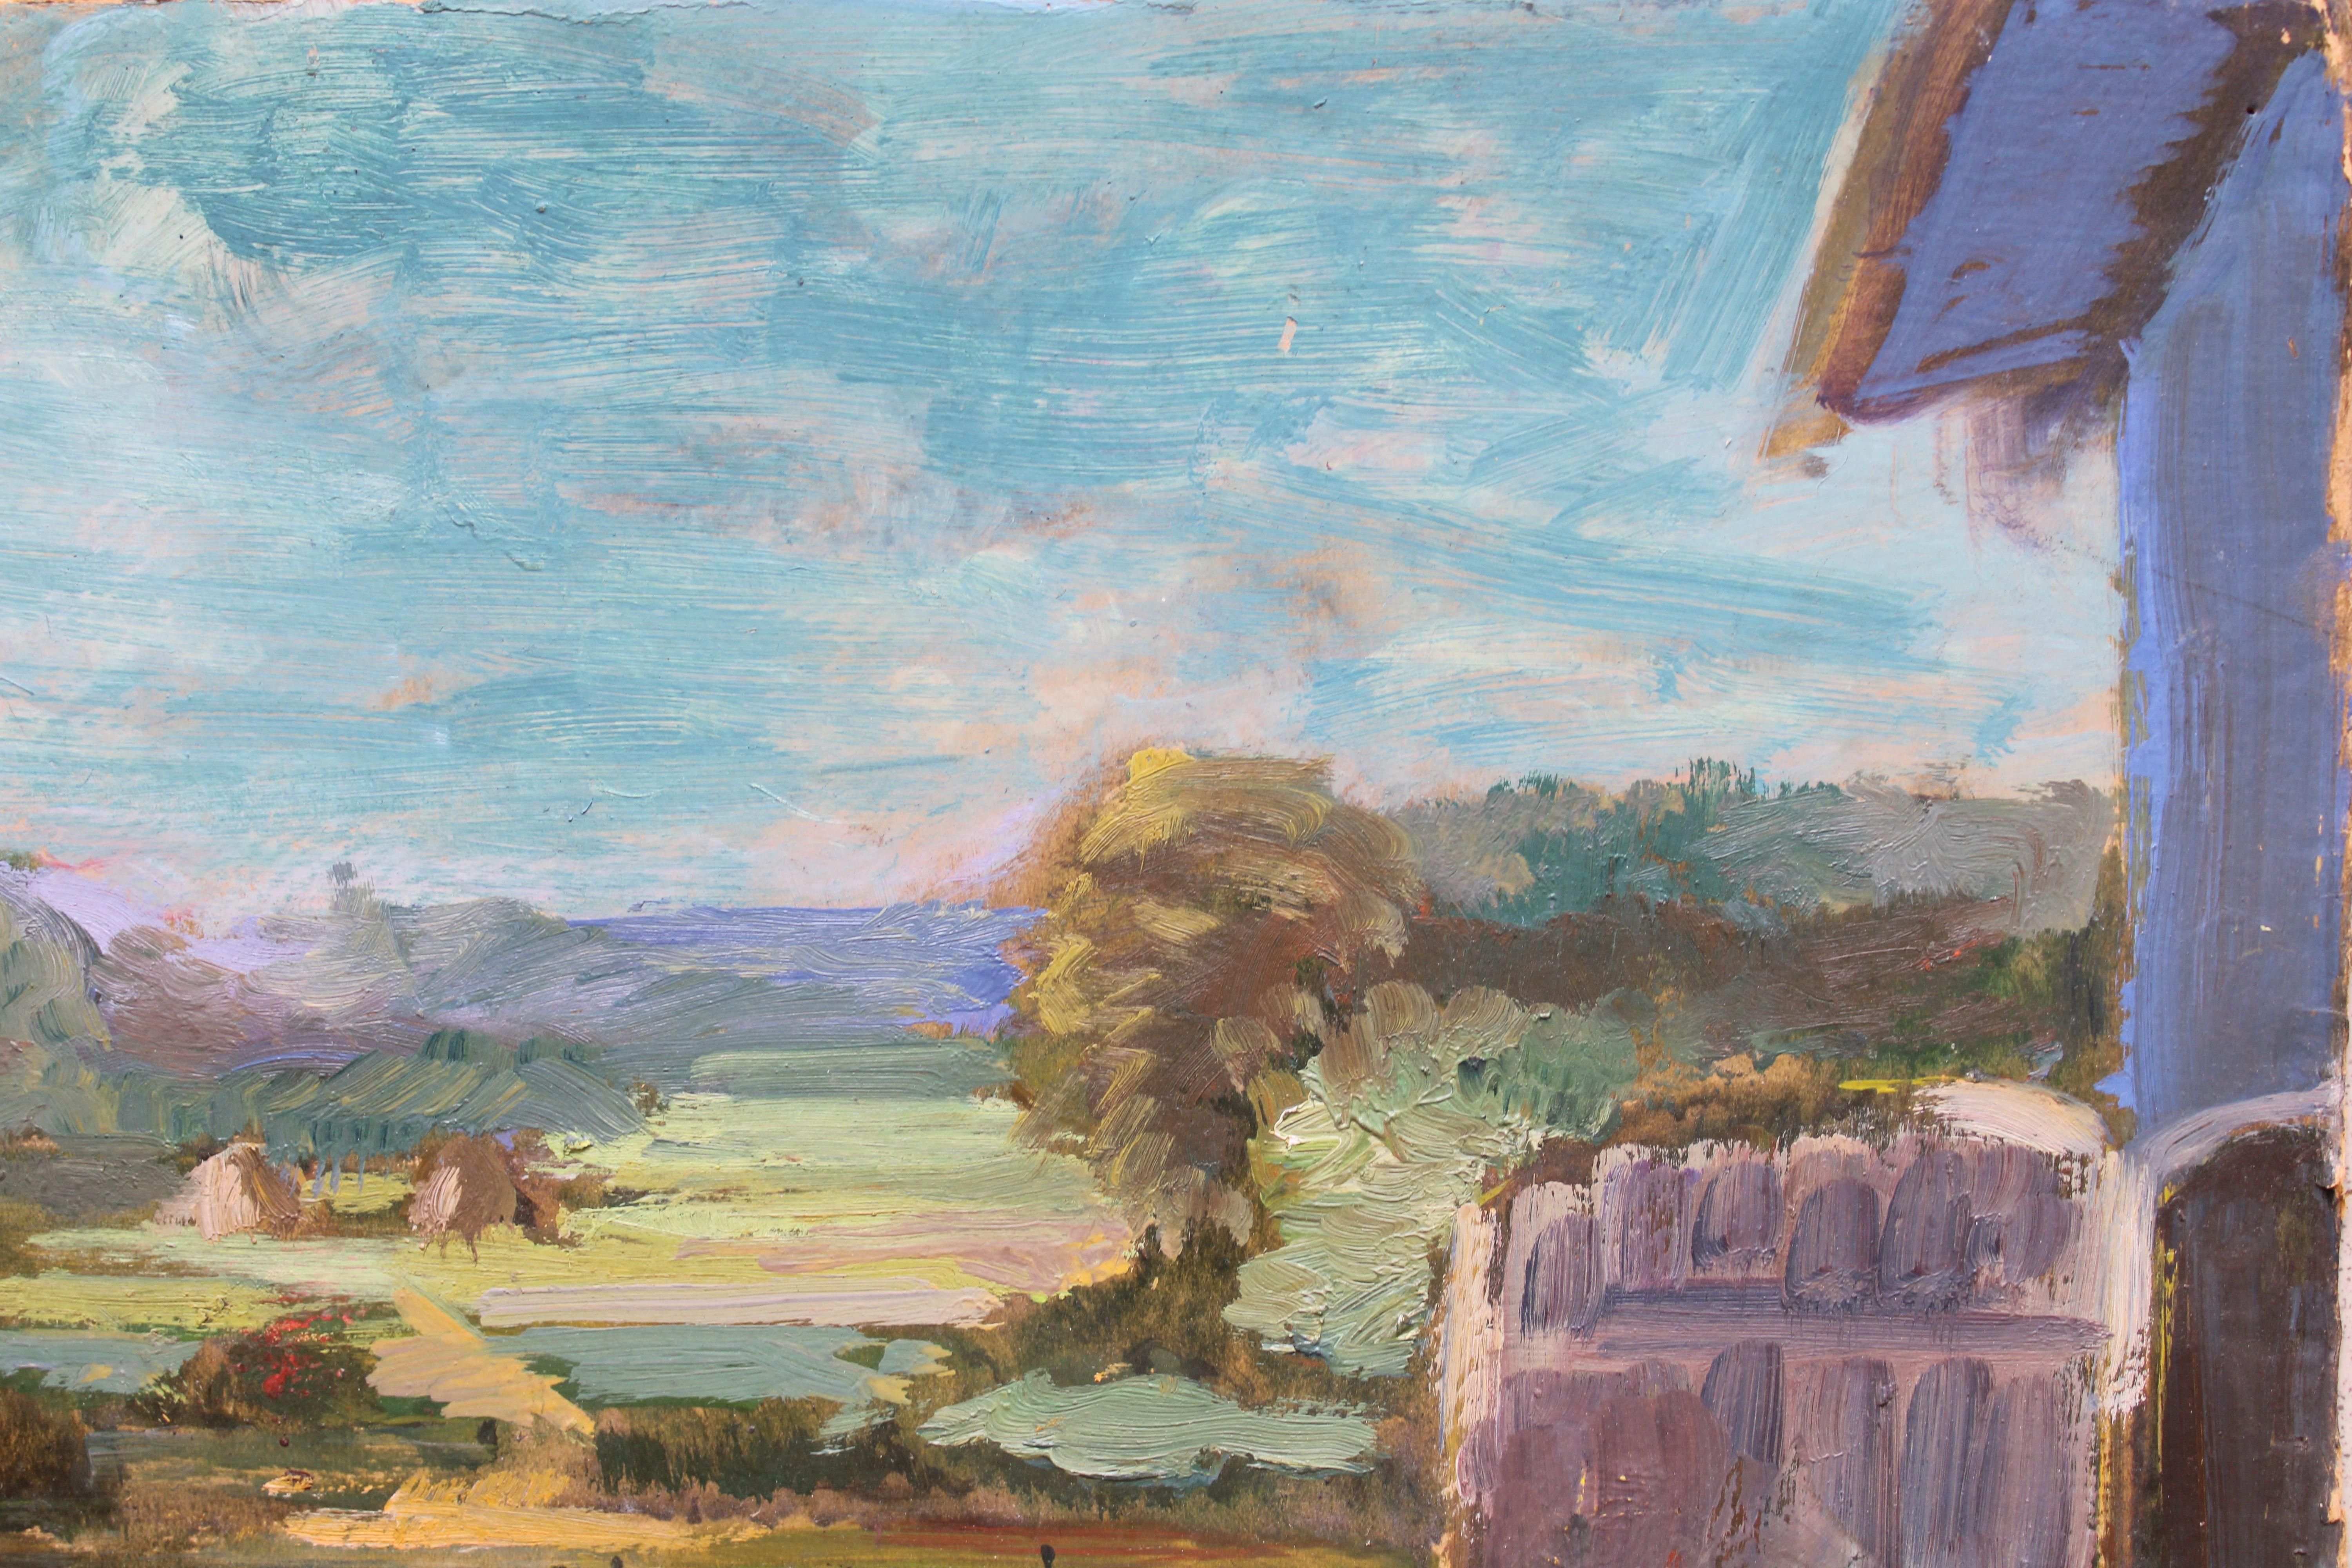 Derrière la grange  1950s. Huile sur carton. 42,5 x 49,5 cm - Painting de Aleksandra Belcova